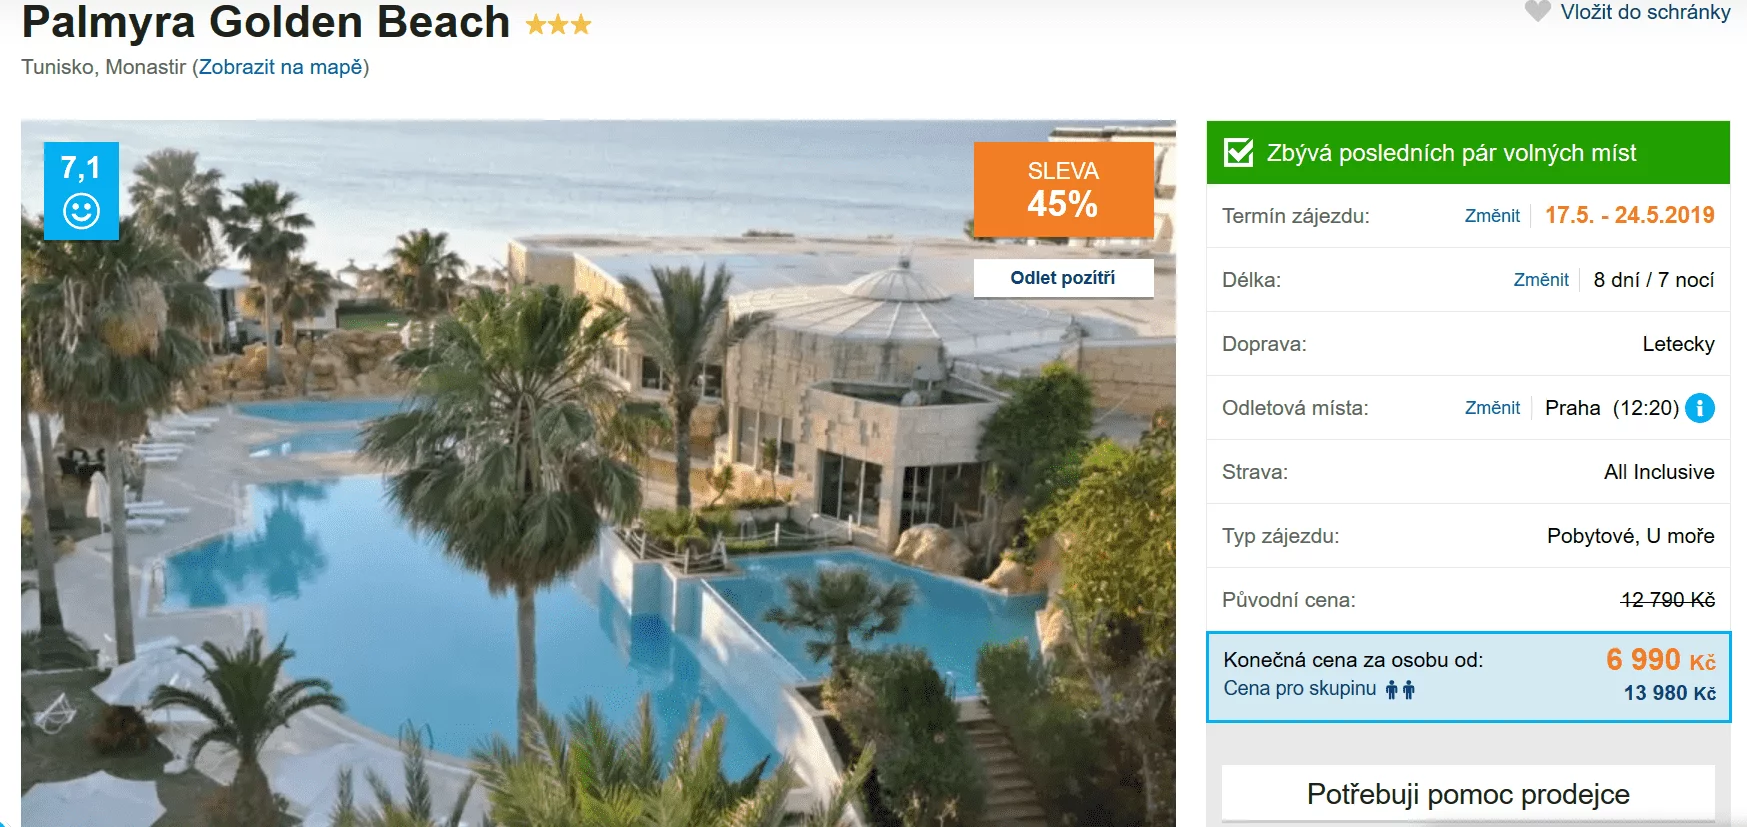 Zájezd Tunisko (hotel Palmyra Golden Beach)